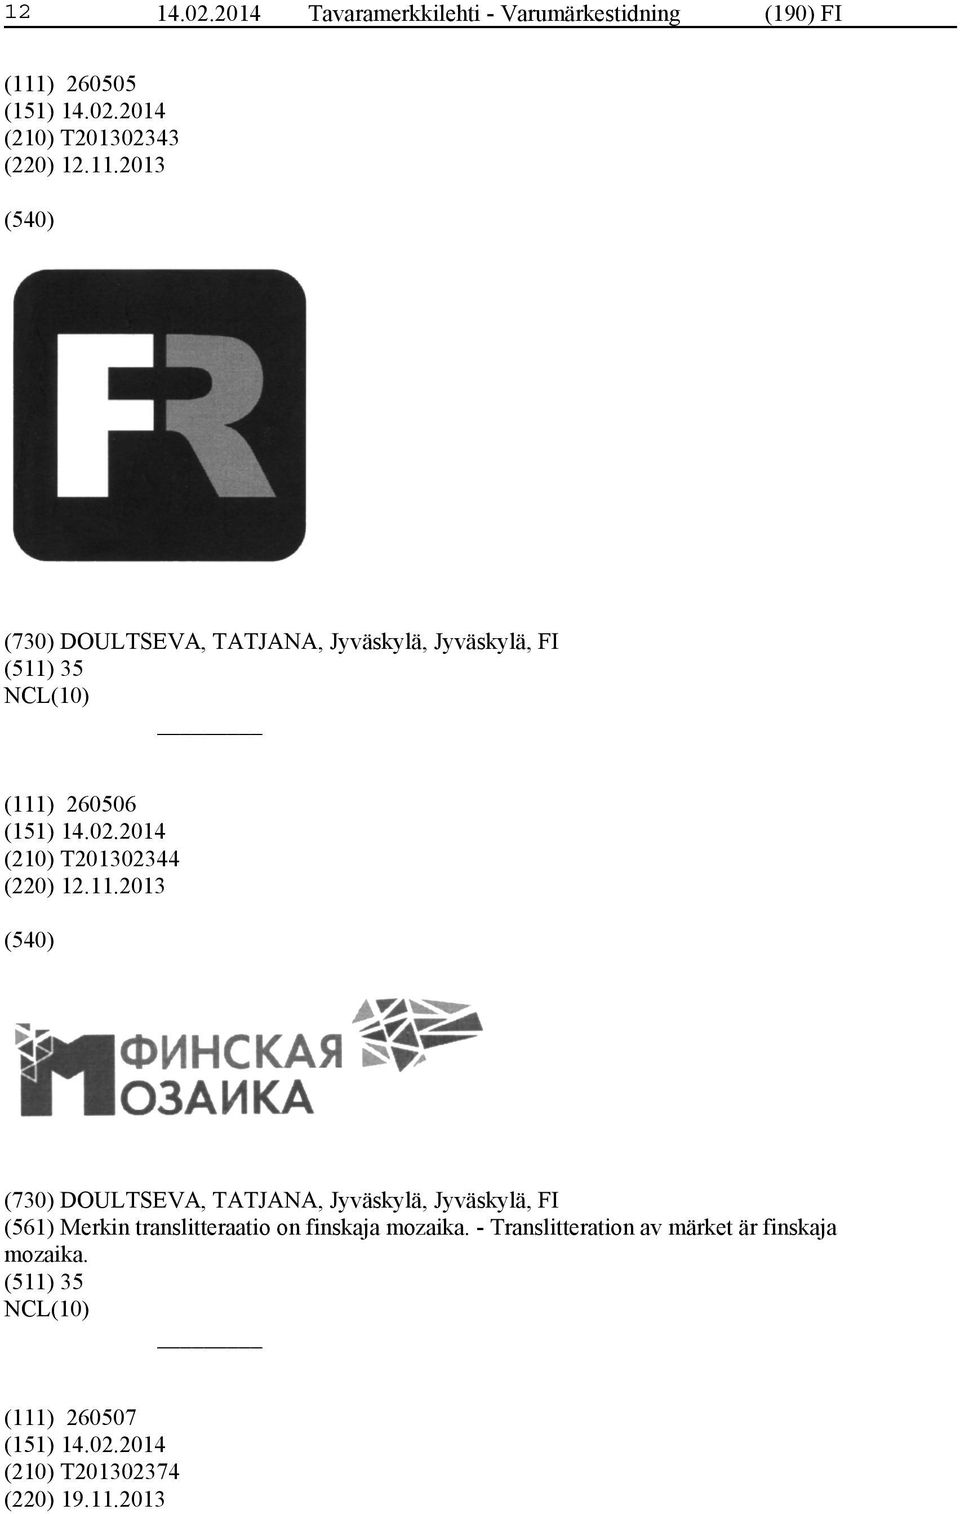 2013 (730) DOULTSEVA, TATJANA, Jyväskylä, Jyväskylä, FI (511) 35 (111) 260506 (210) T201302344 (220) 12.